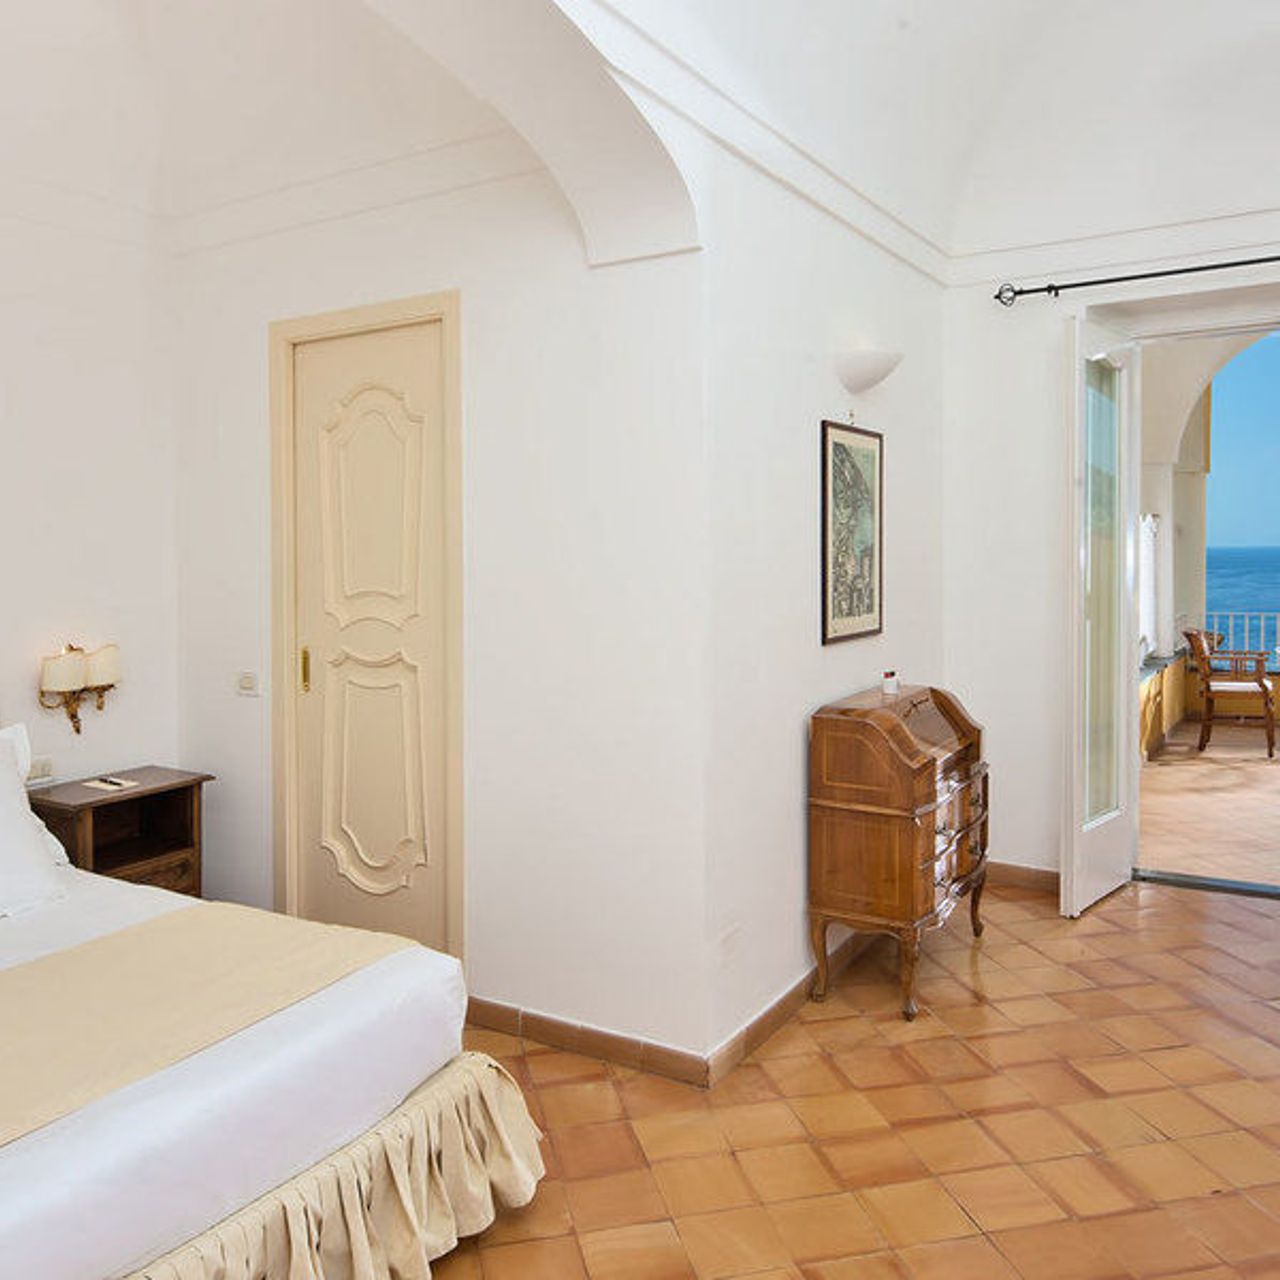 oppervlakkig Vervolg Goot Hotel L'Ancora - Positano - HOTEL INFO